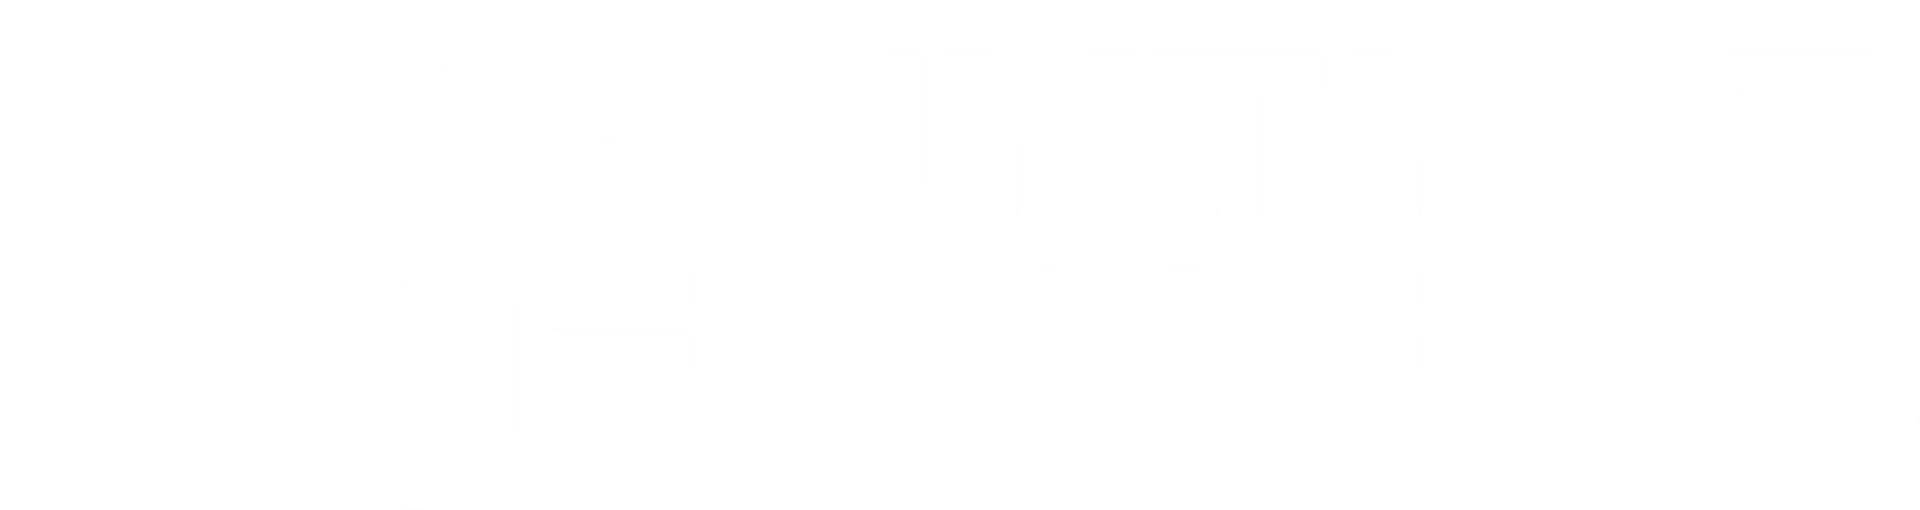 Logo van Stein